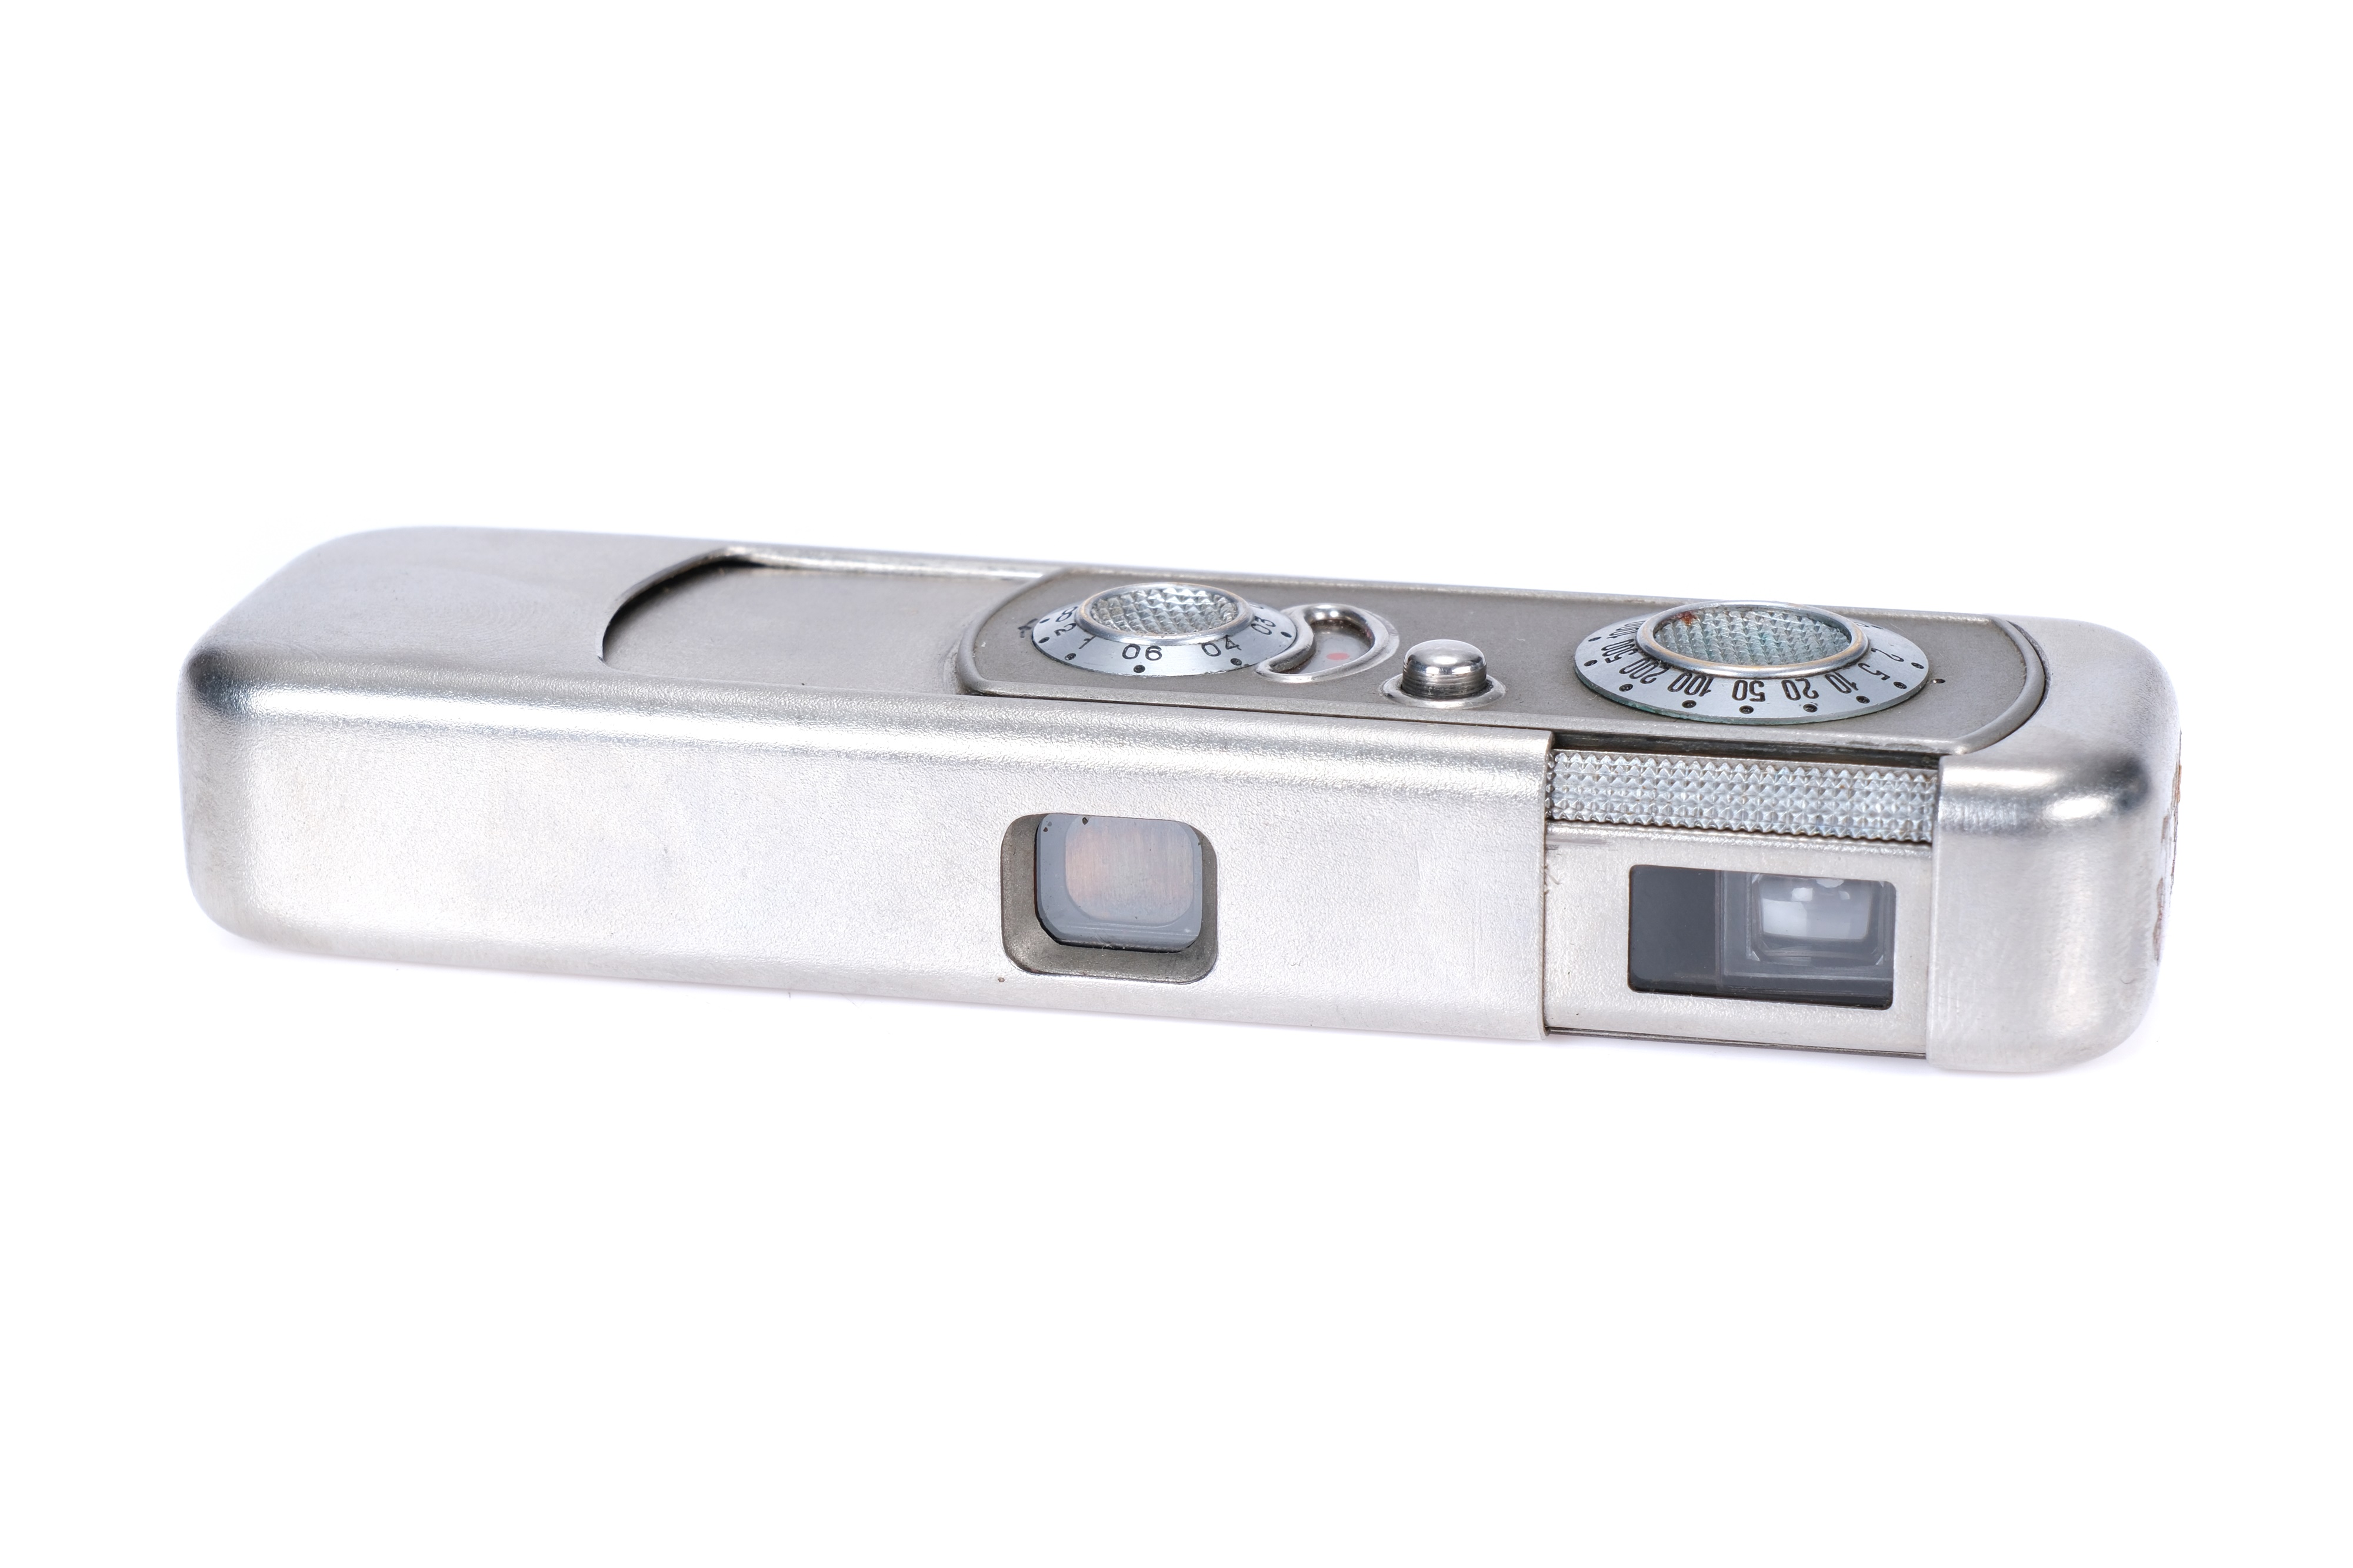 A Minox VEF Riga Sub-Miniature Camera